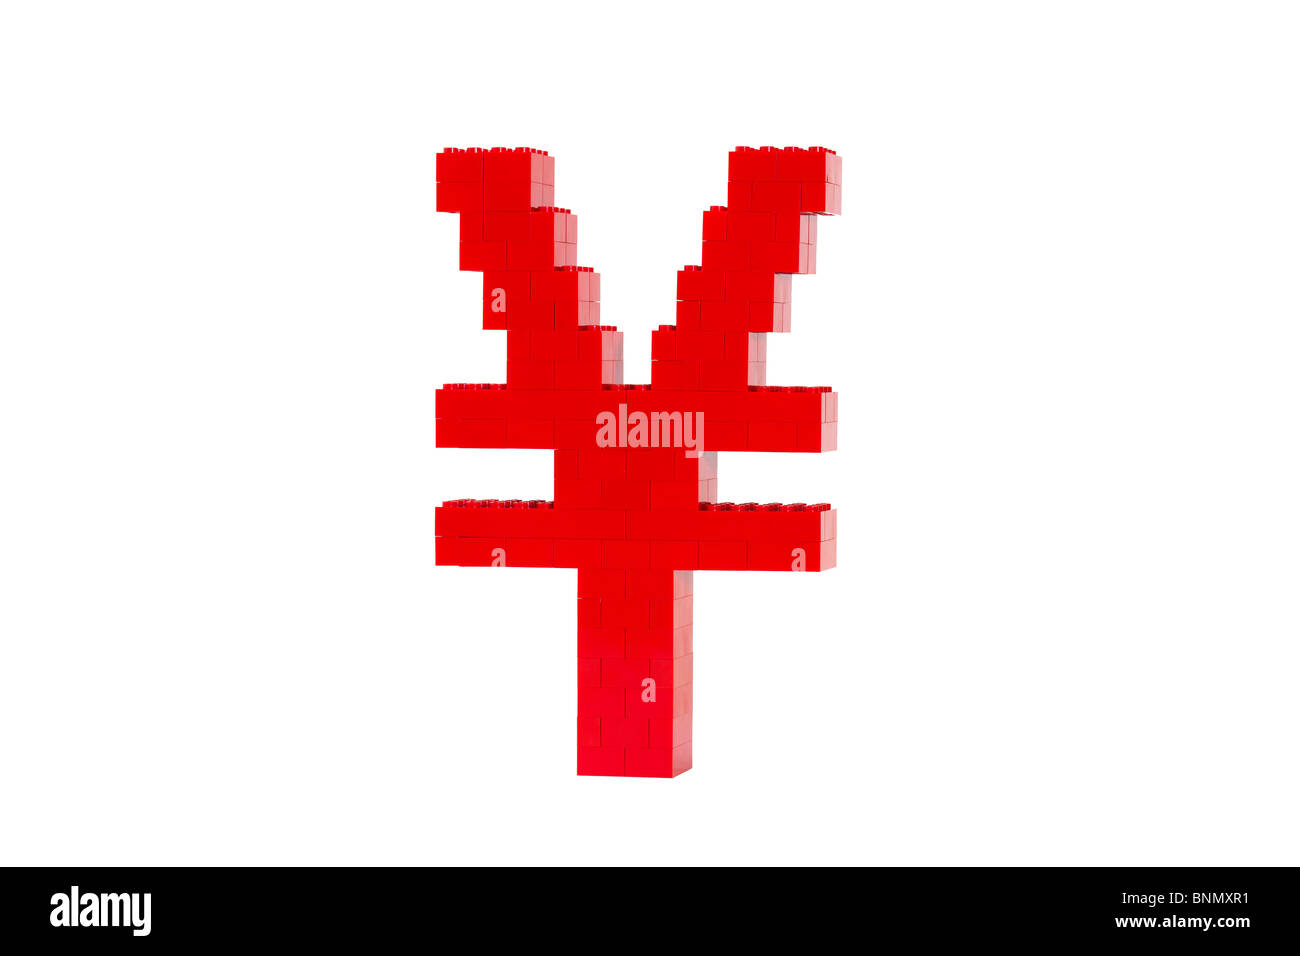 Ein rotes Symbol des chinesischen Yuan aus Spielzeug Ziegel gebaut und erschossen vor einem weißen Hintergrund in einem Winkel zu zeigen, dass es 3D Natur ist. Stockfoto